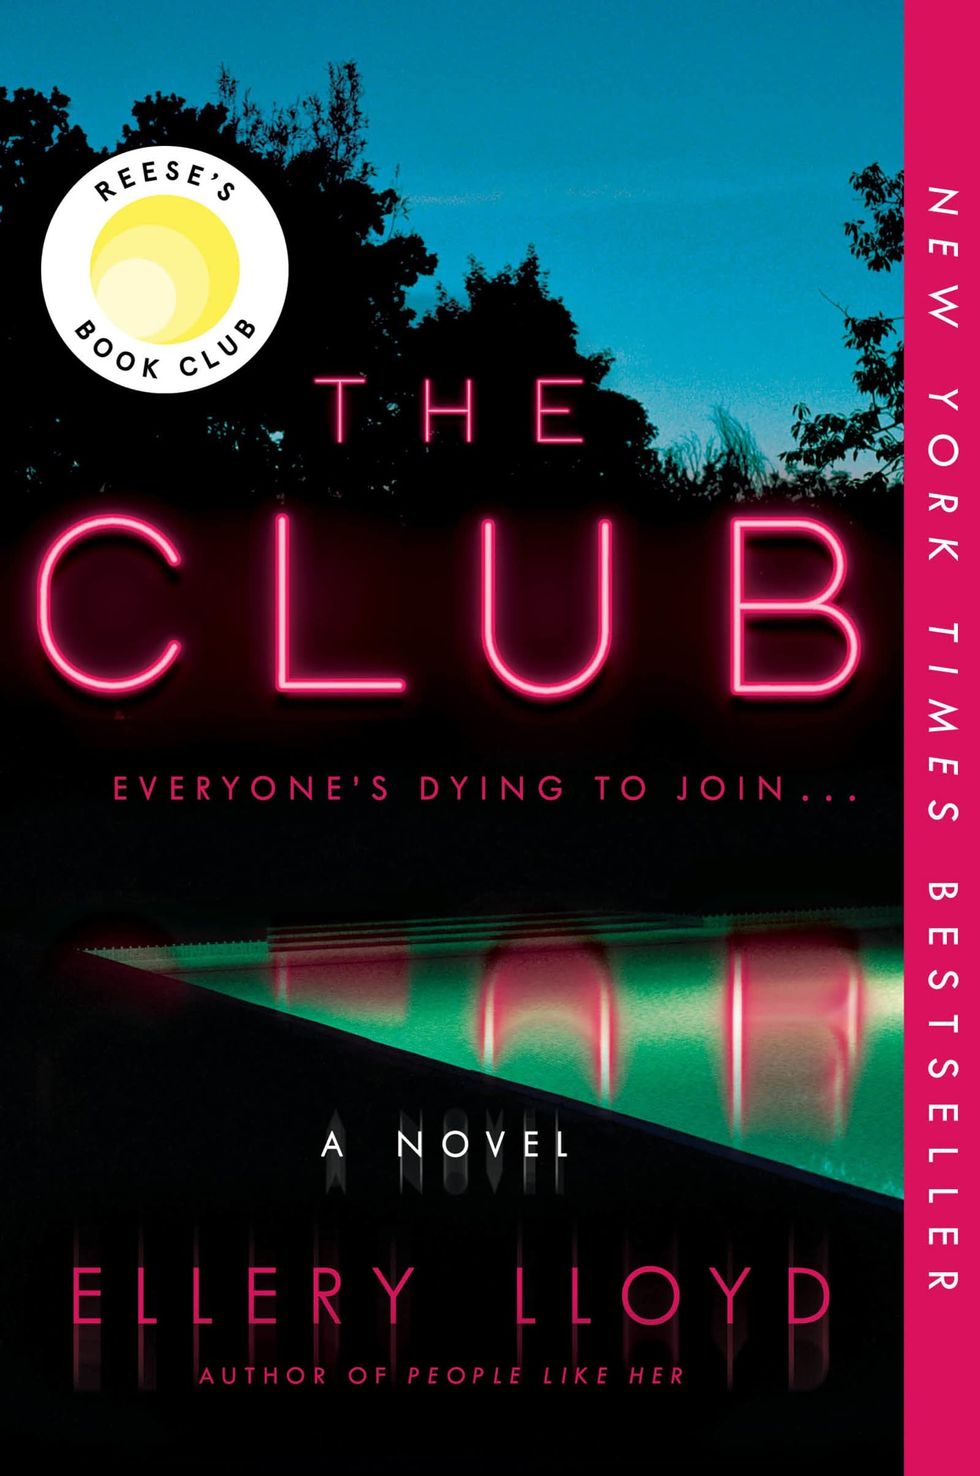 "The Club" by Ellery Lloyd